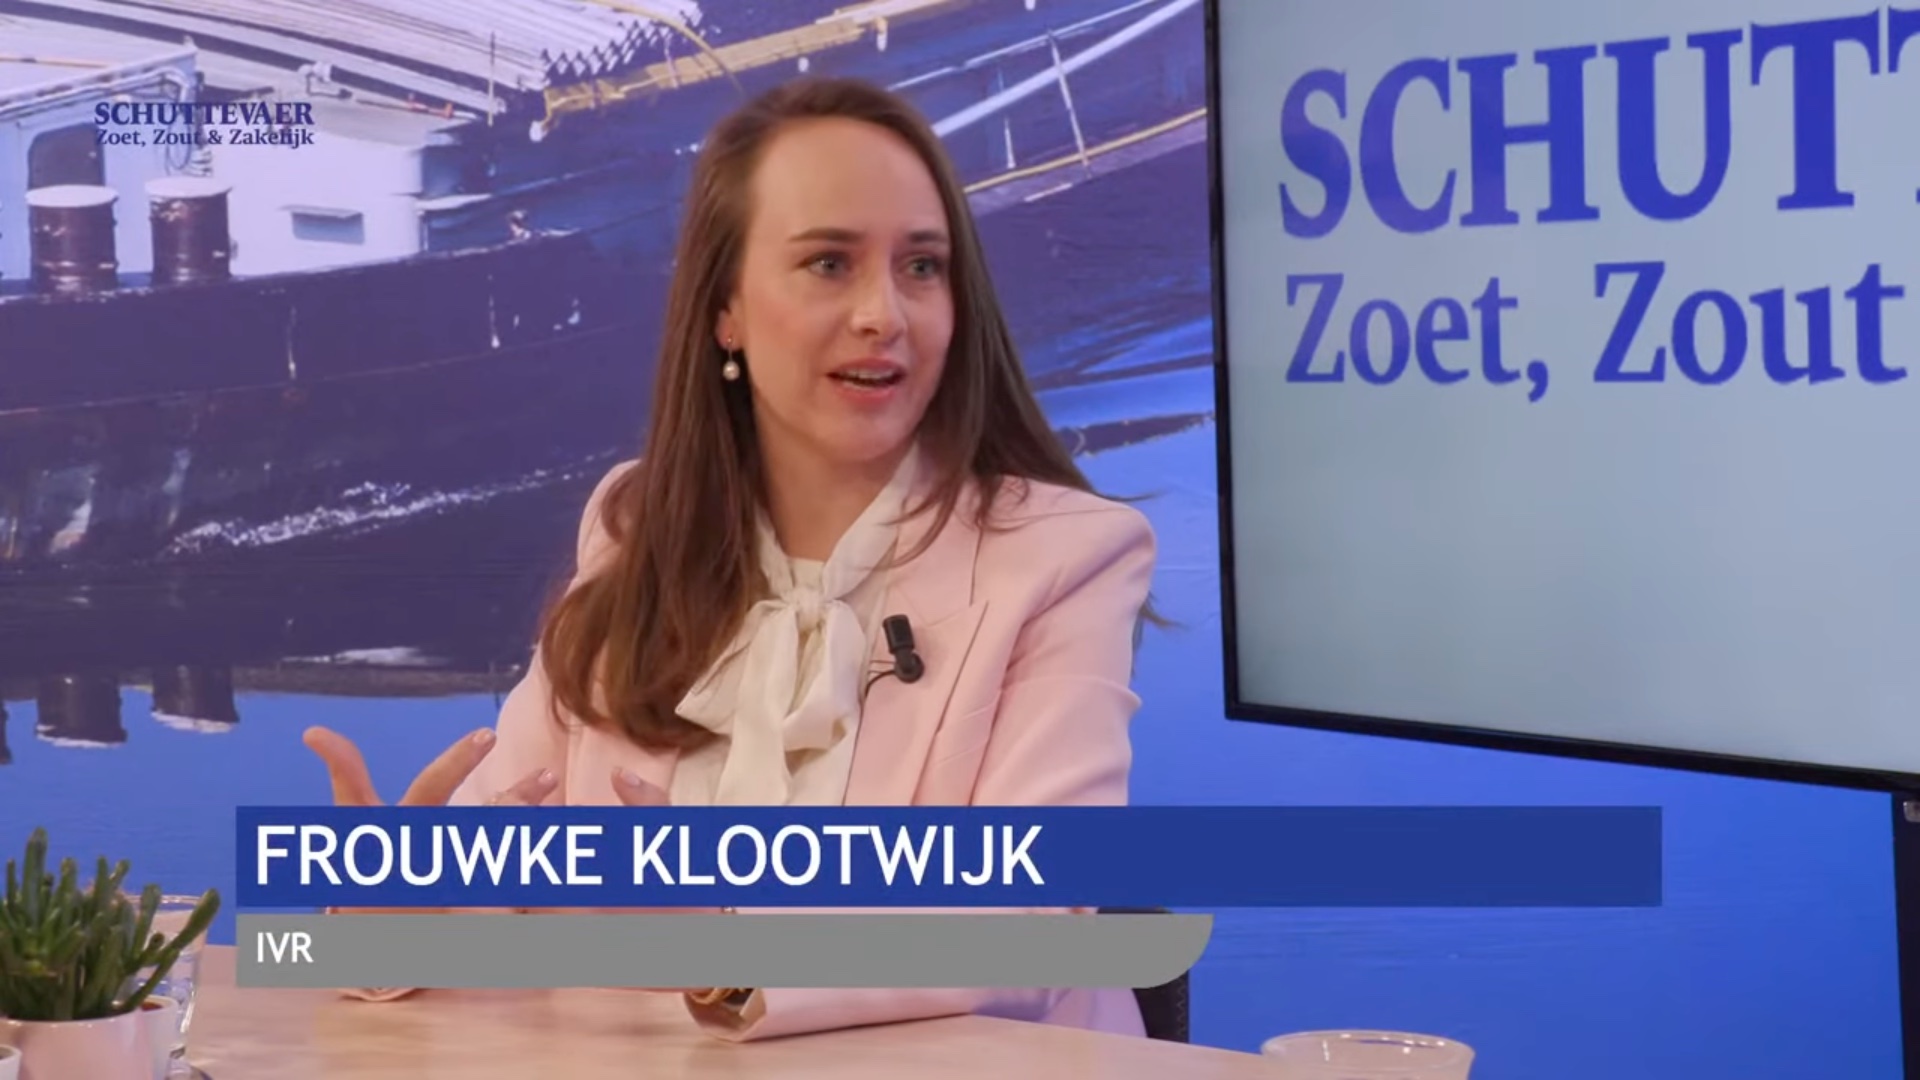 Frouwke Klootwijk is secretaris-generaal bij de IVR. (Beeld uit uitzending)